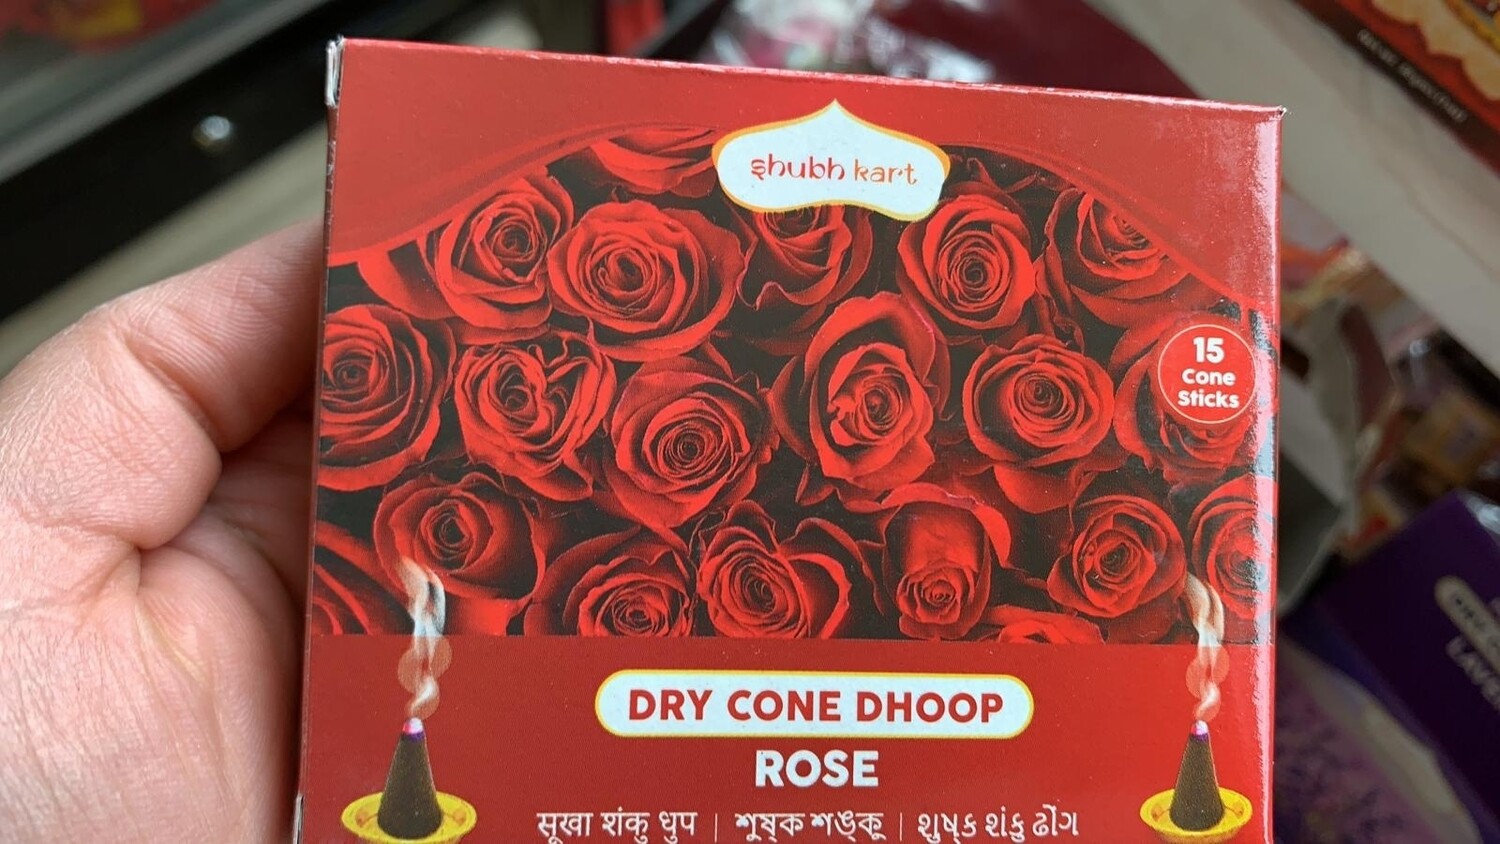 SHUBHKART DRY CONE DHOOP ROSE (30gm)